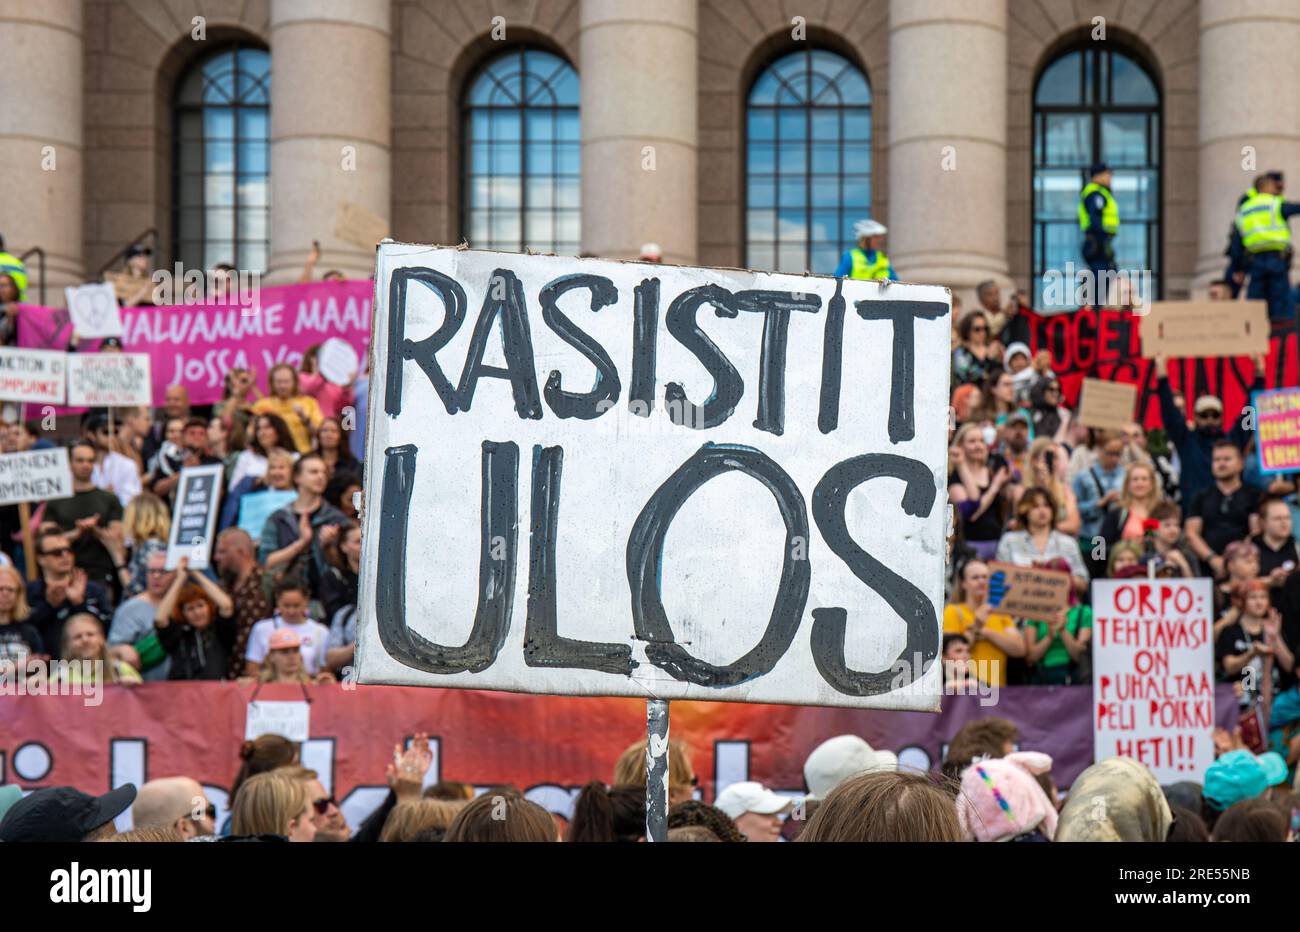 Rasistit ulos. Manifestanti con cartelli fatti a mano e striscioni davanti a Eduskuntatalo o al Parlamento durante la manifestazione a Helsinki, Finlandia. Foto Stock